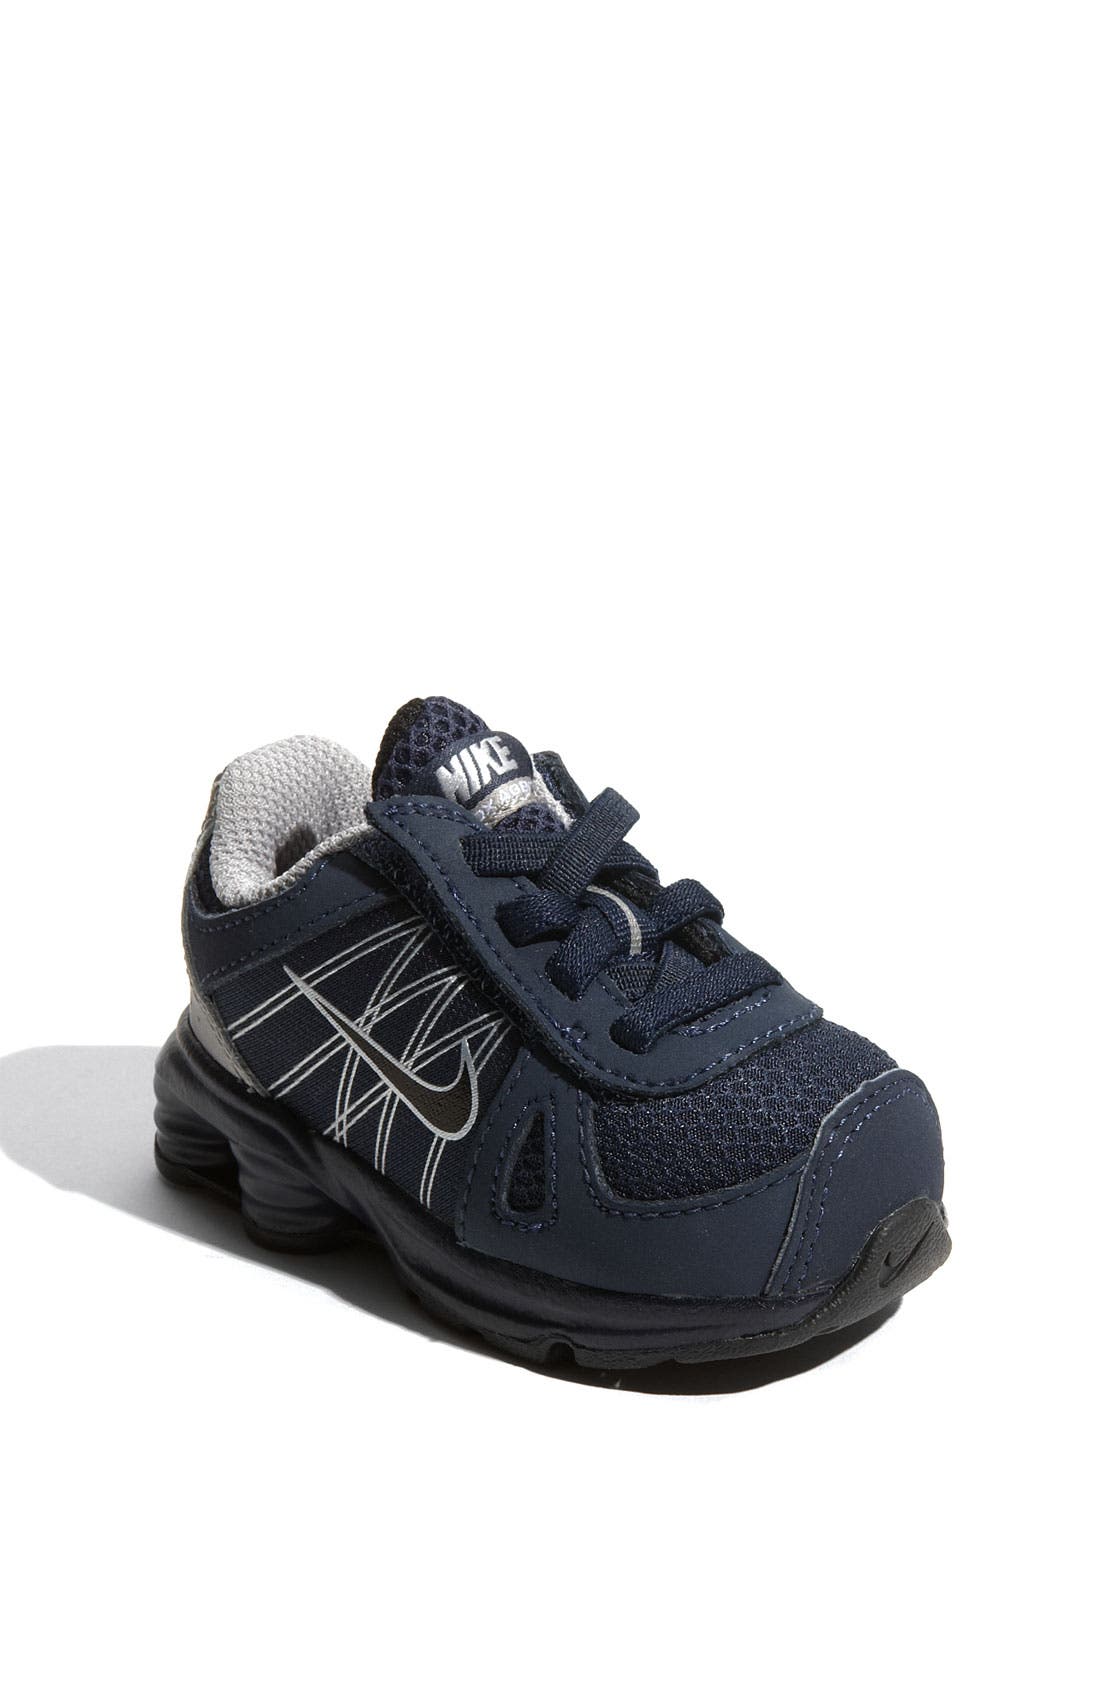 Nike 'Shox Agent' Running Shoe (Baby 